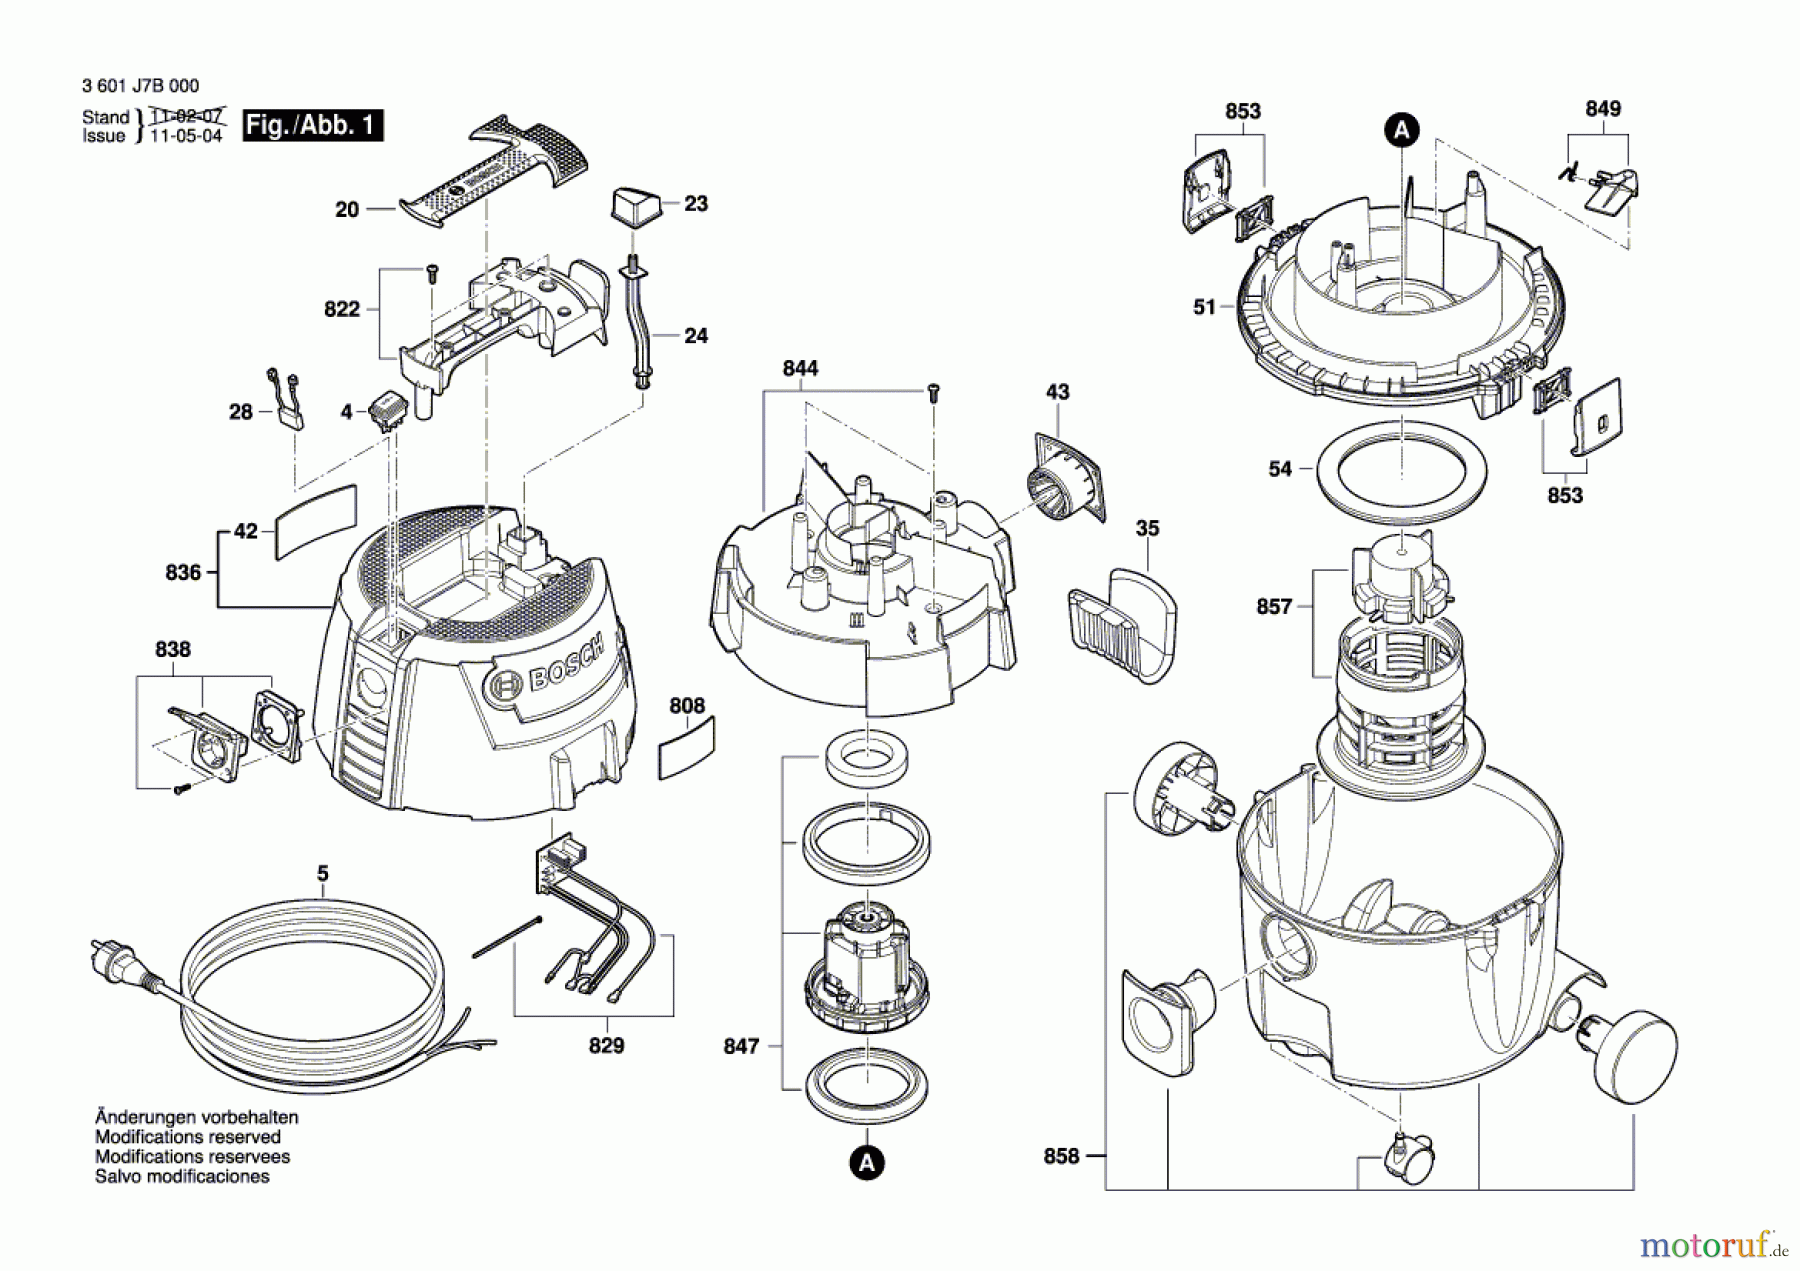  Bosch Werkzeug Allzwecksauger GAS 15 L Seite 1